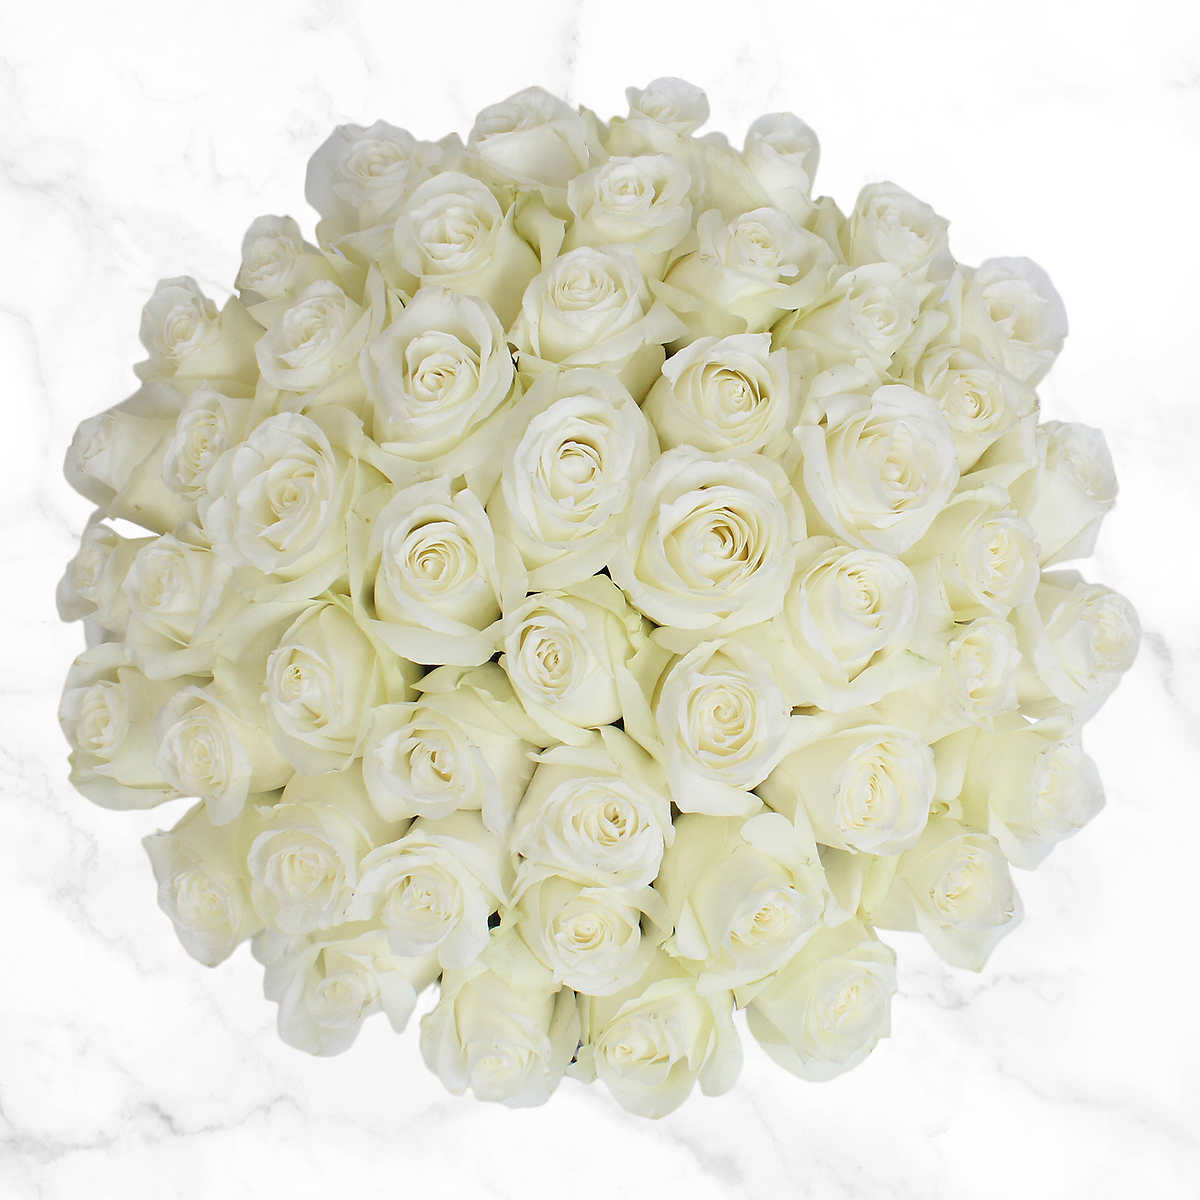 50 Stem White Roses